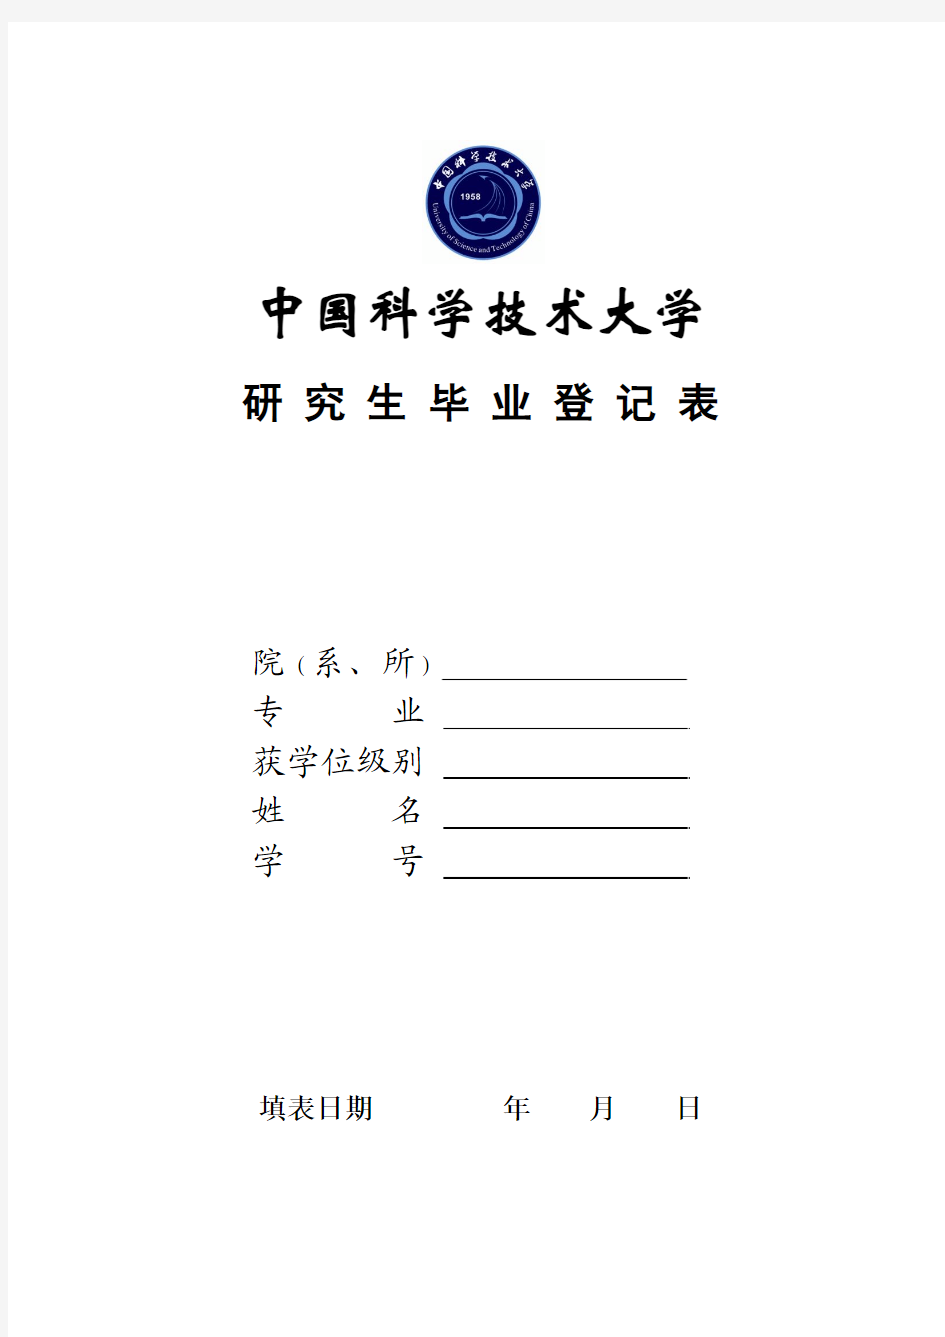 中国科技大学 中国科学技术大学研 究 生 毕 业 登 记 表